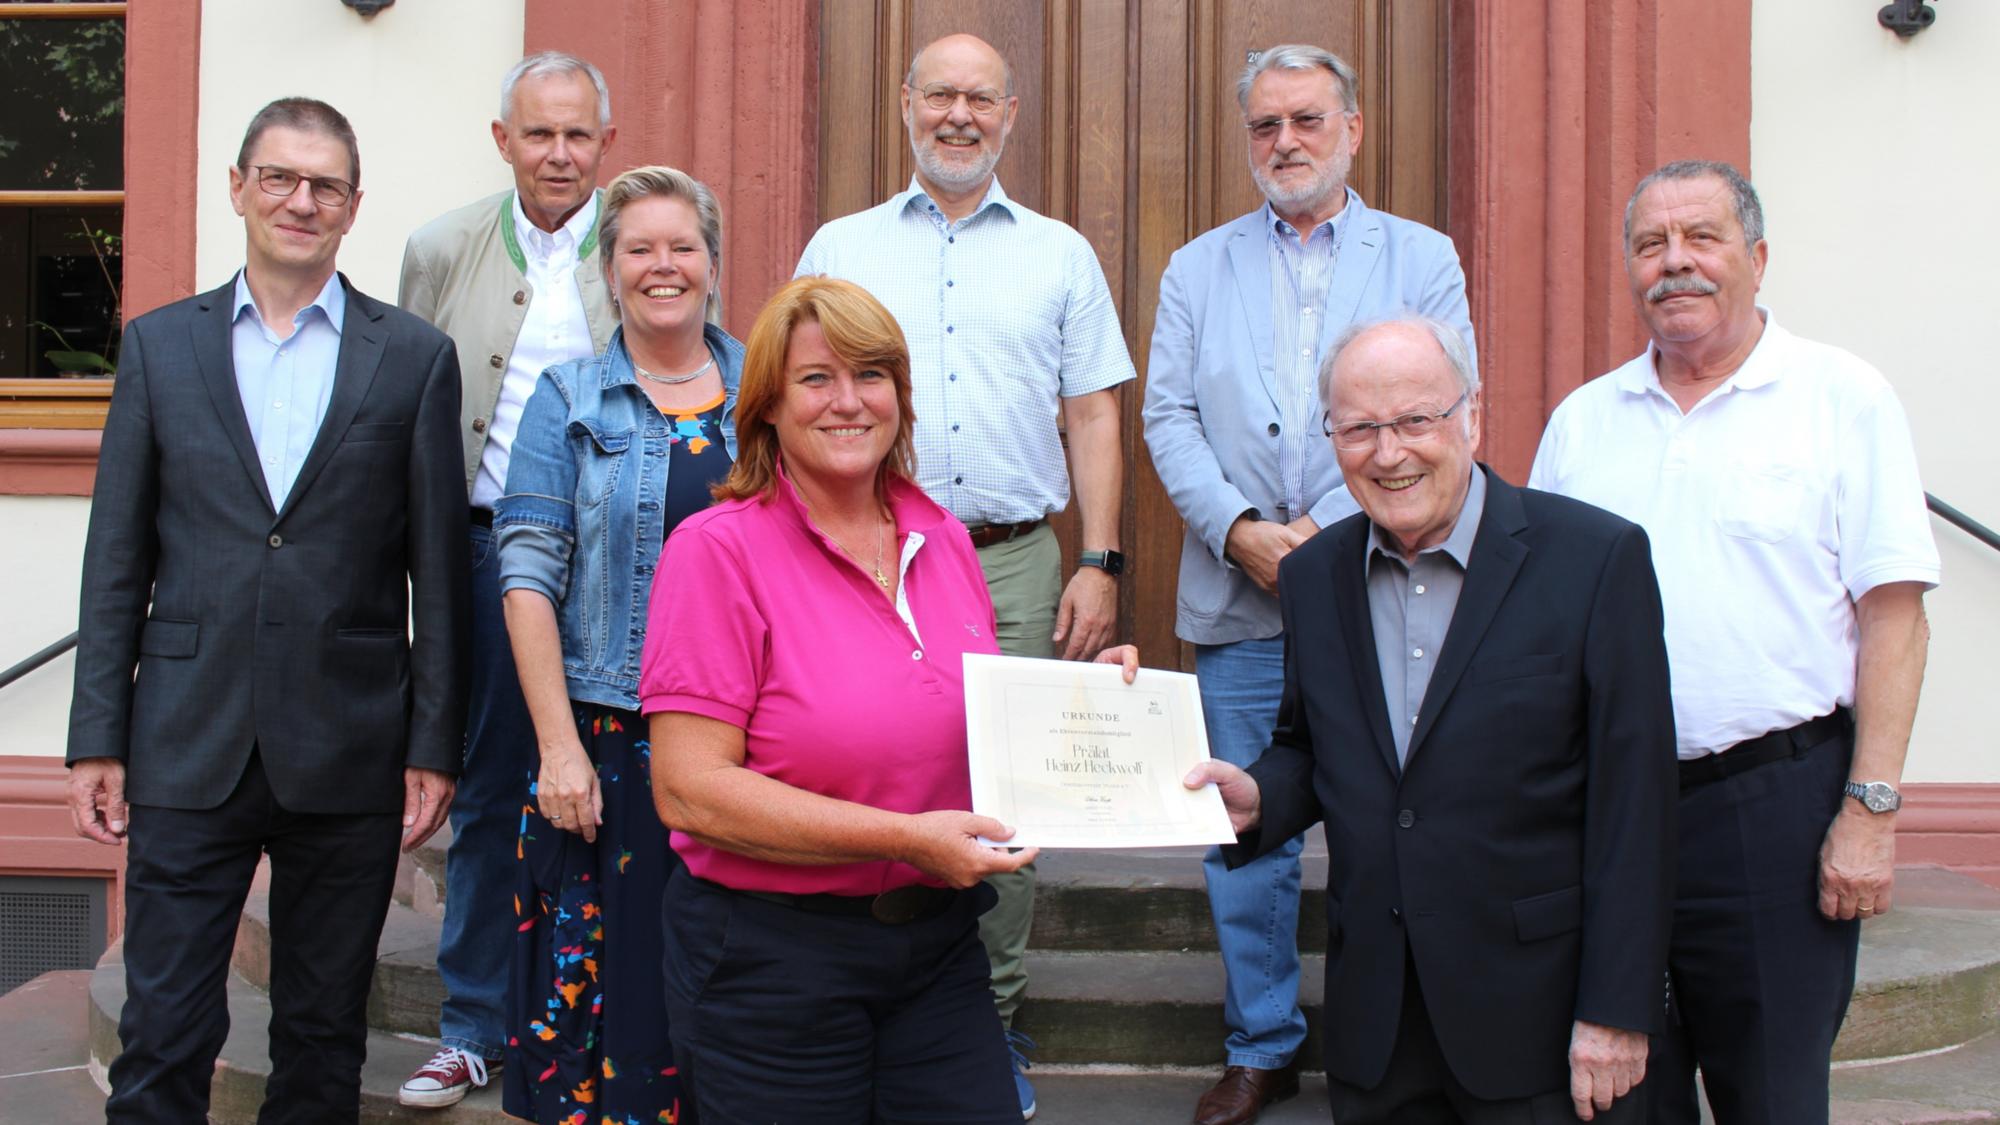 Mainz, 14. Juli 2022: Vor der konstituierenden Vorstandssitzung überreichte Sabine Flegel die Urkunde für das erste Ehrenvorstandsmitglied an den früheren Domdekan Heinz Heckwolf.